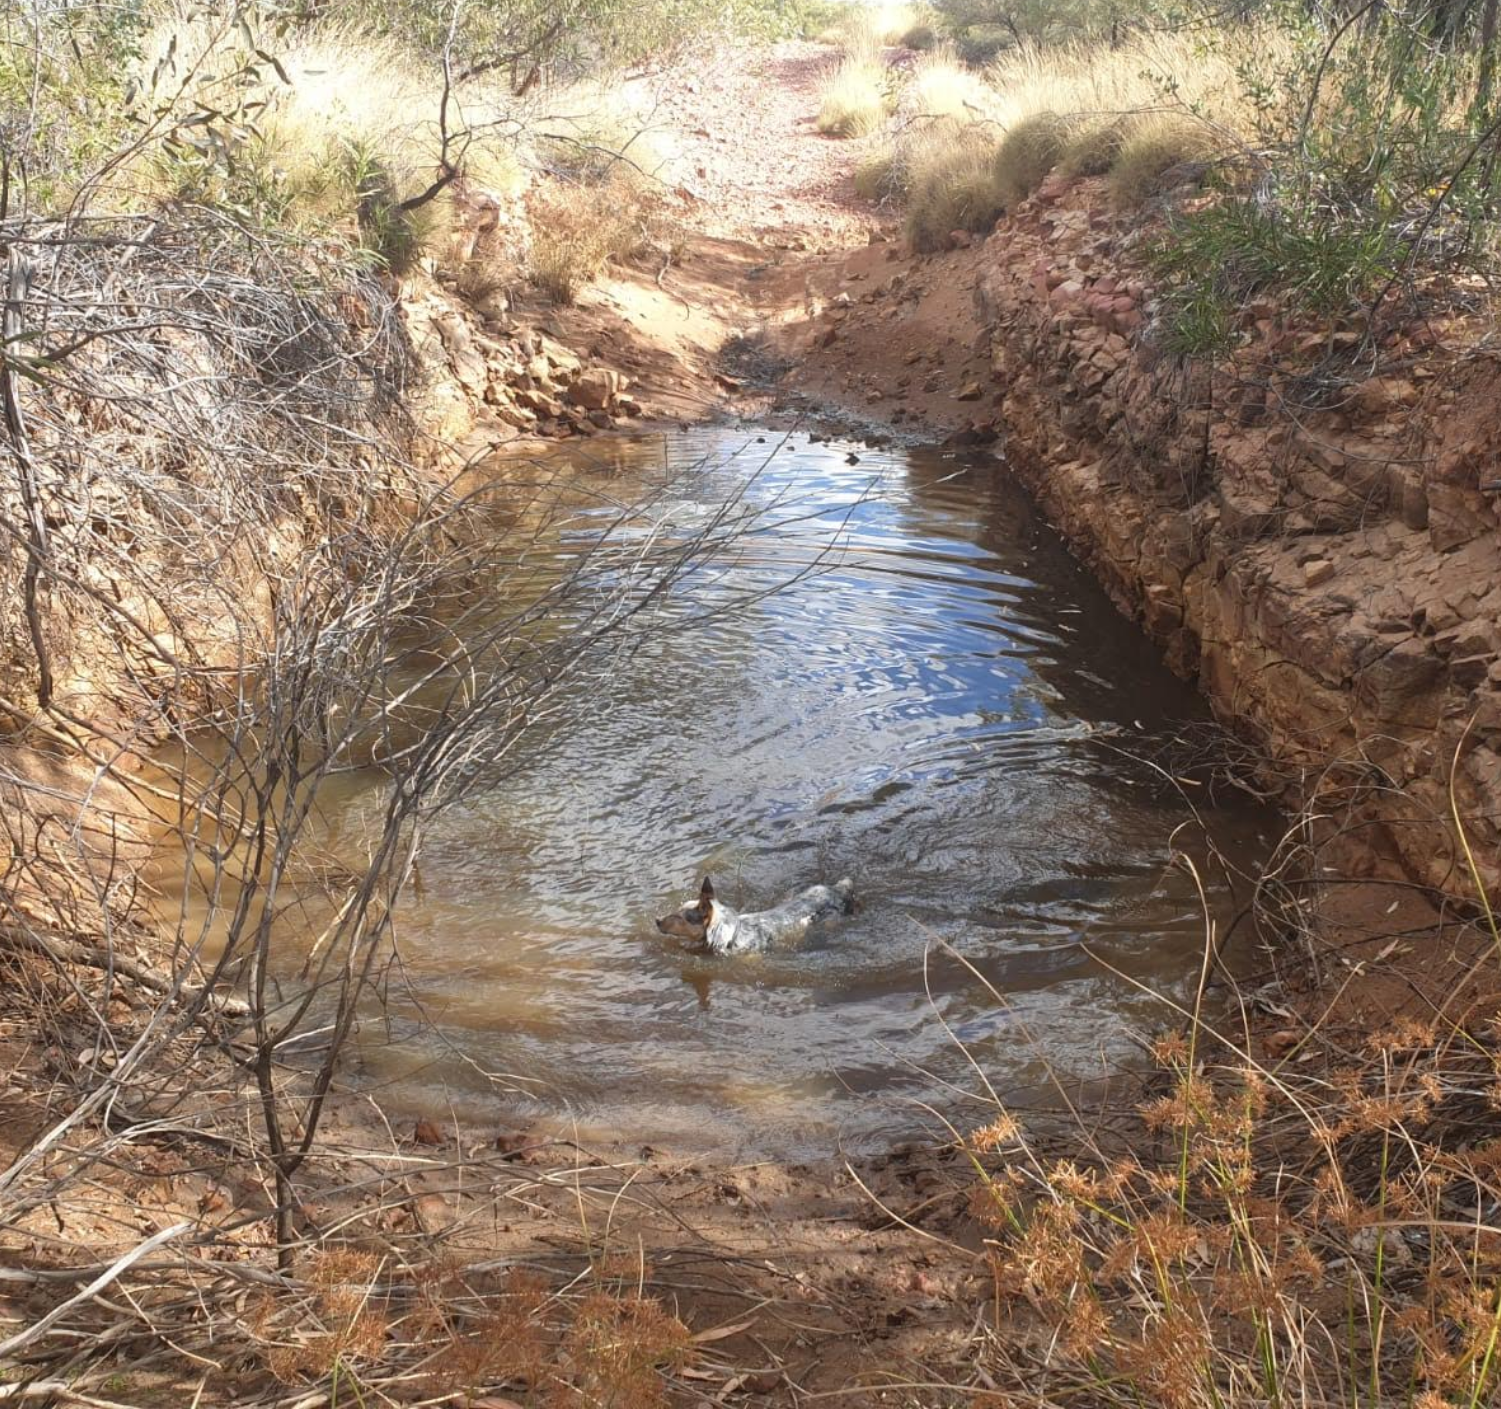 Australian Outback Queensland waterhole Opal Mining trip 